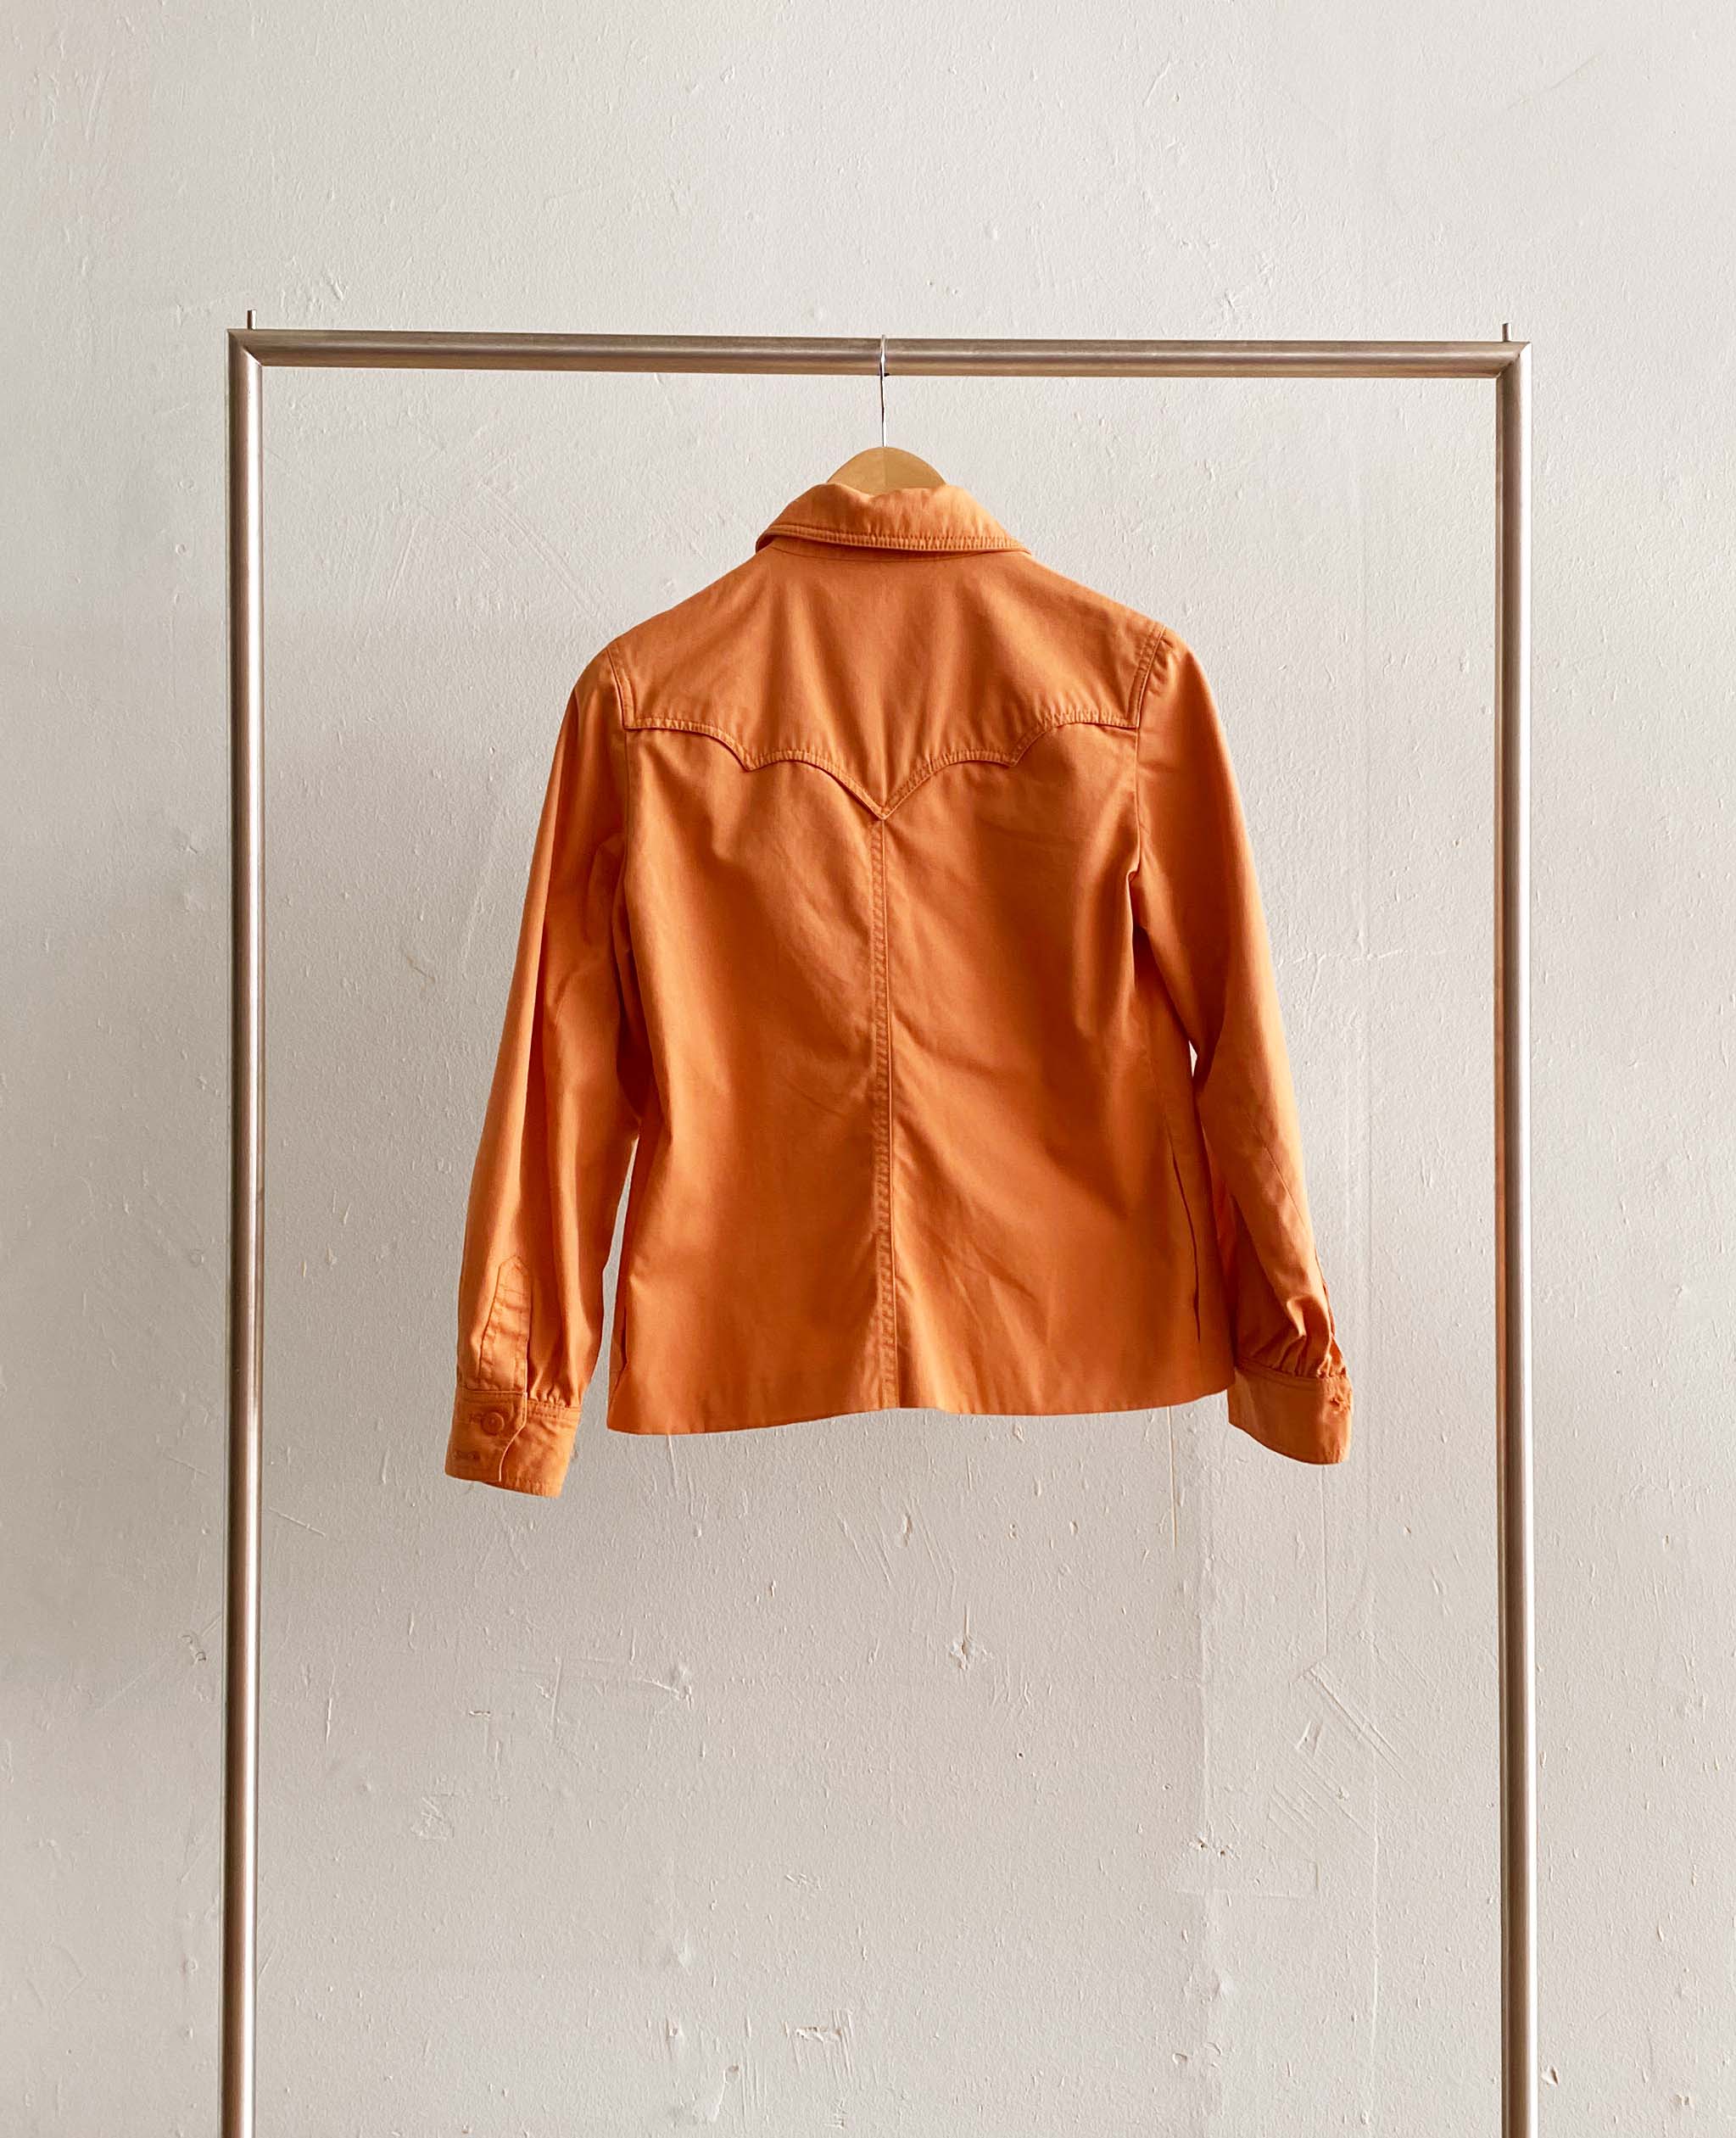 Western Style Orange Jacket